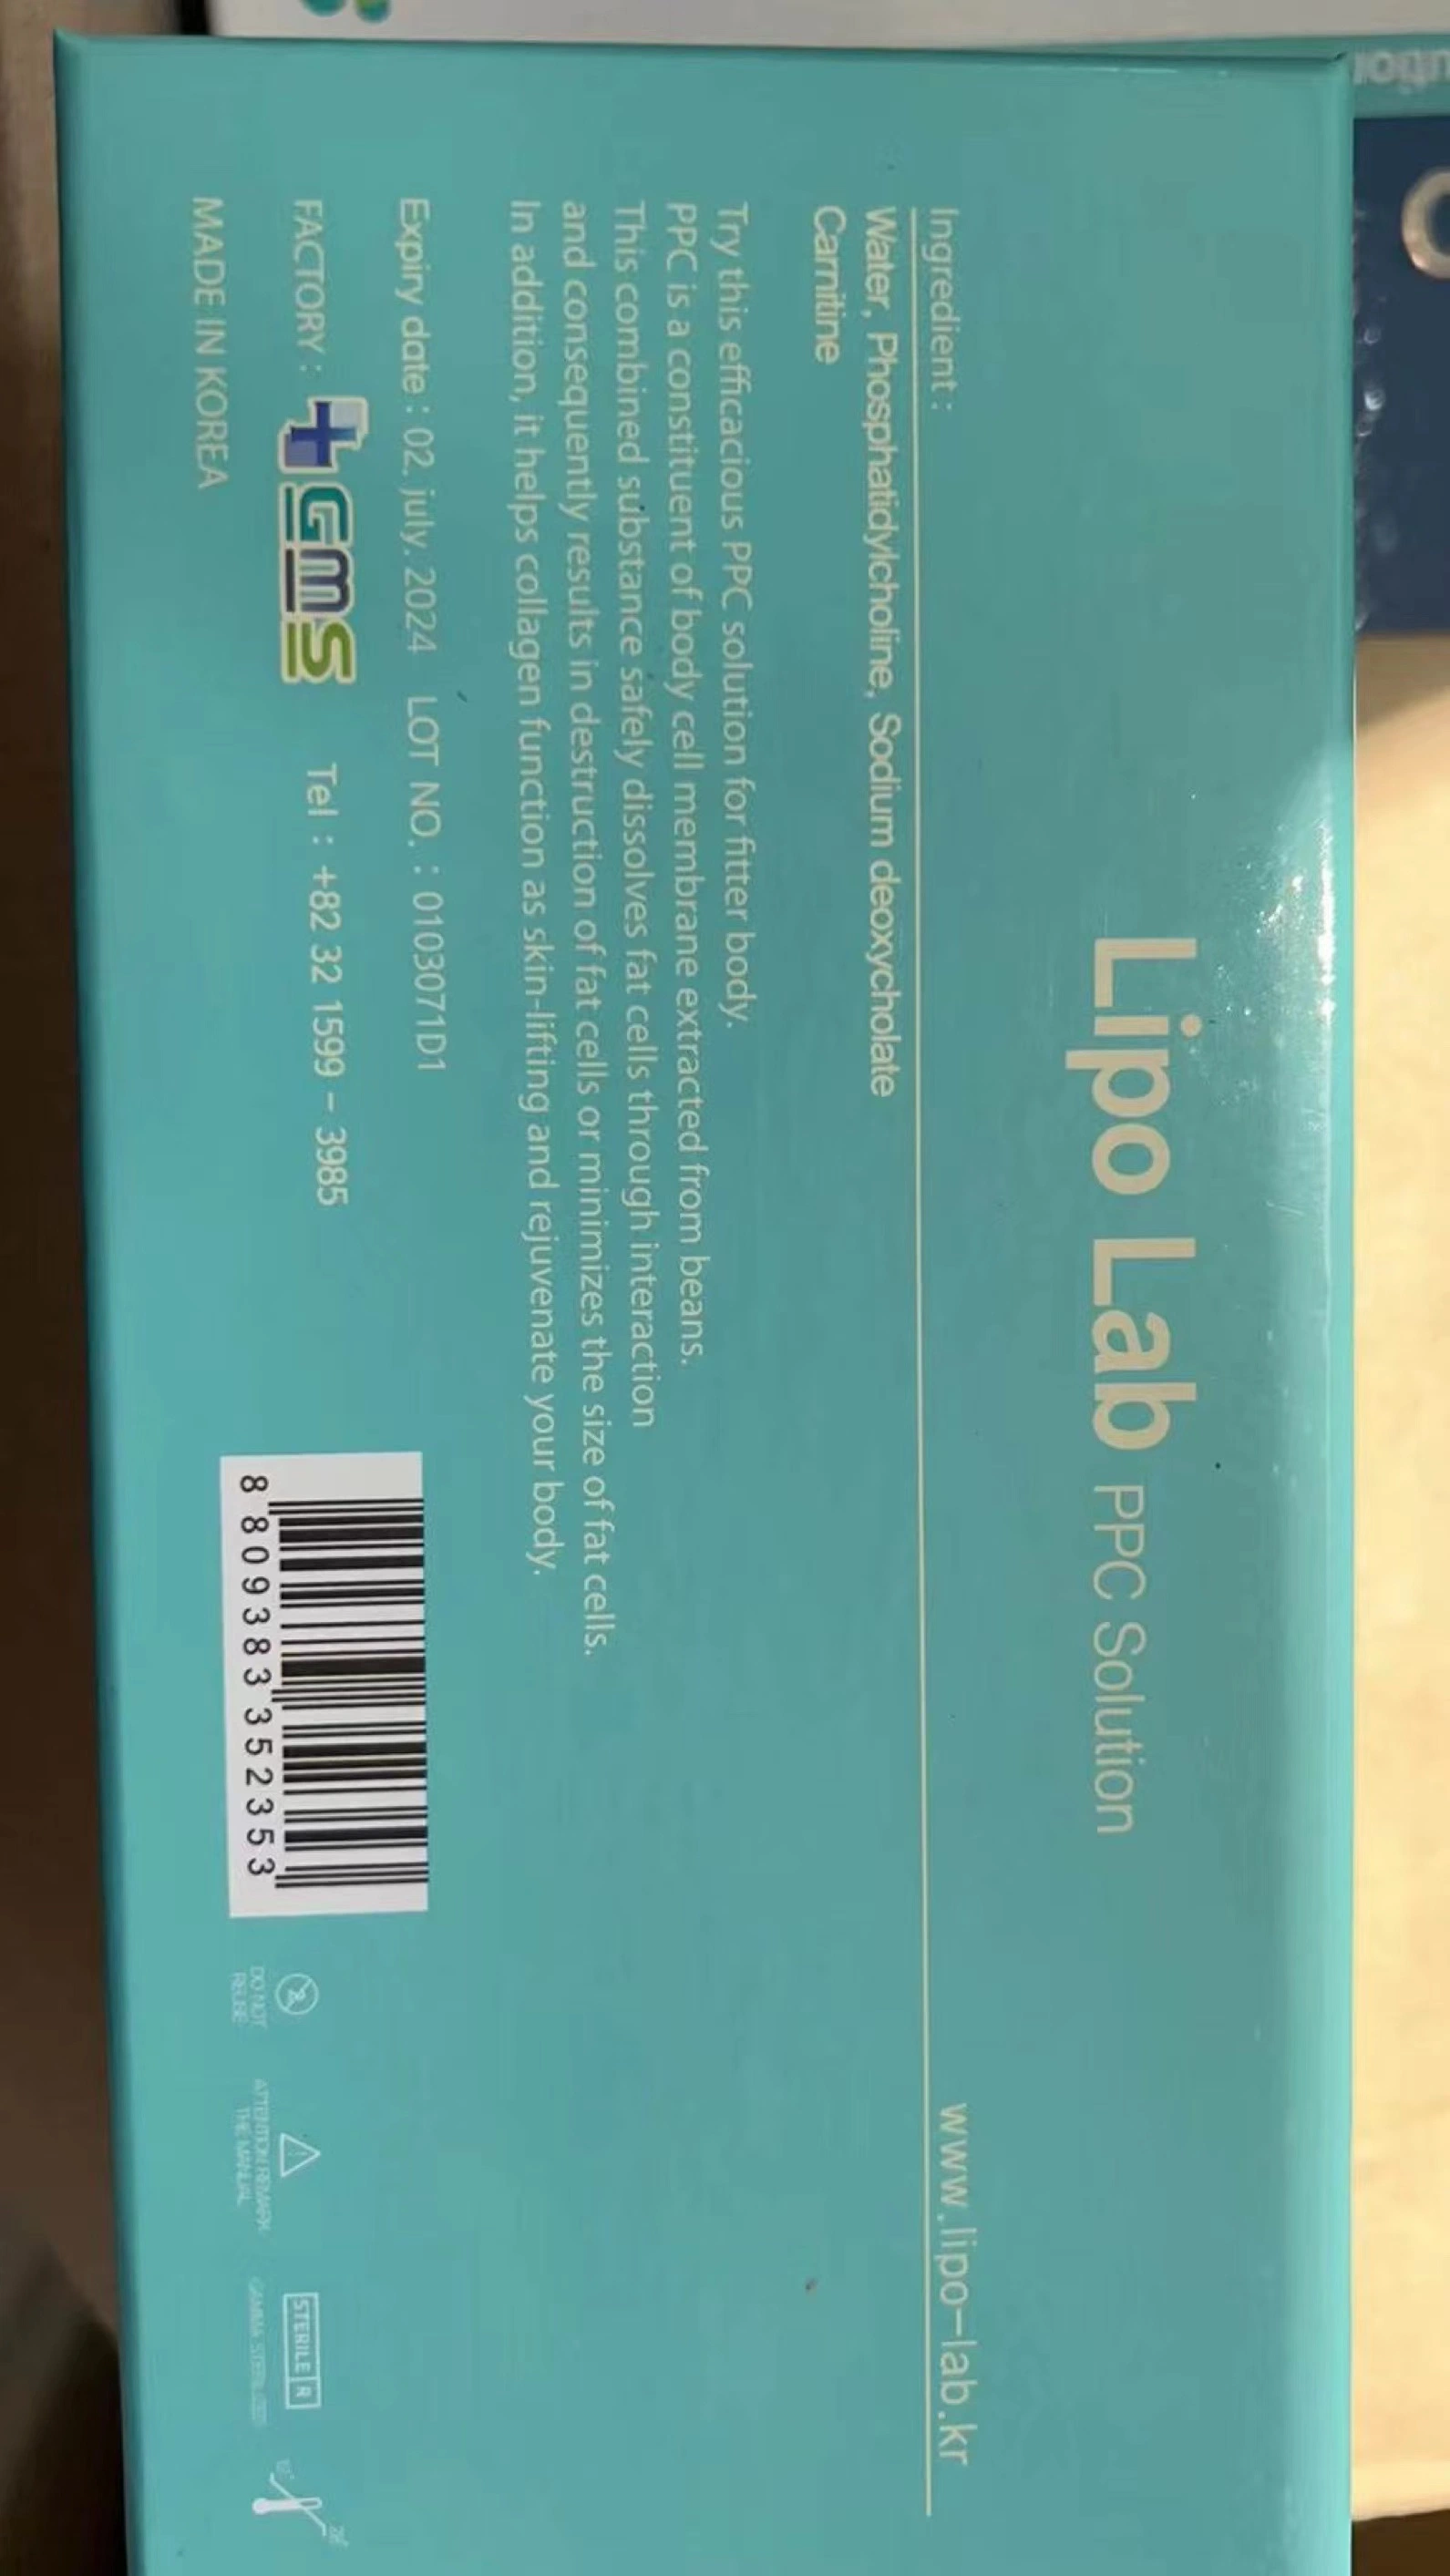 Coréia LipoLab Kabelline Saxend um fosfatidilcolina Ppc lipólise injeção lipolíticos LiPo Lab perda de peso injeção de calagem elevada qualidade gordura solúvel Produtos